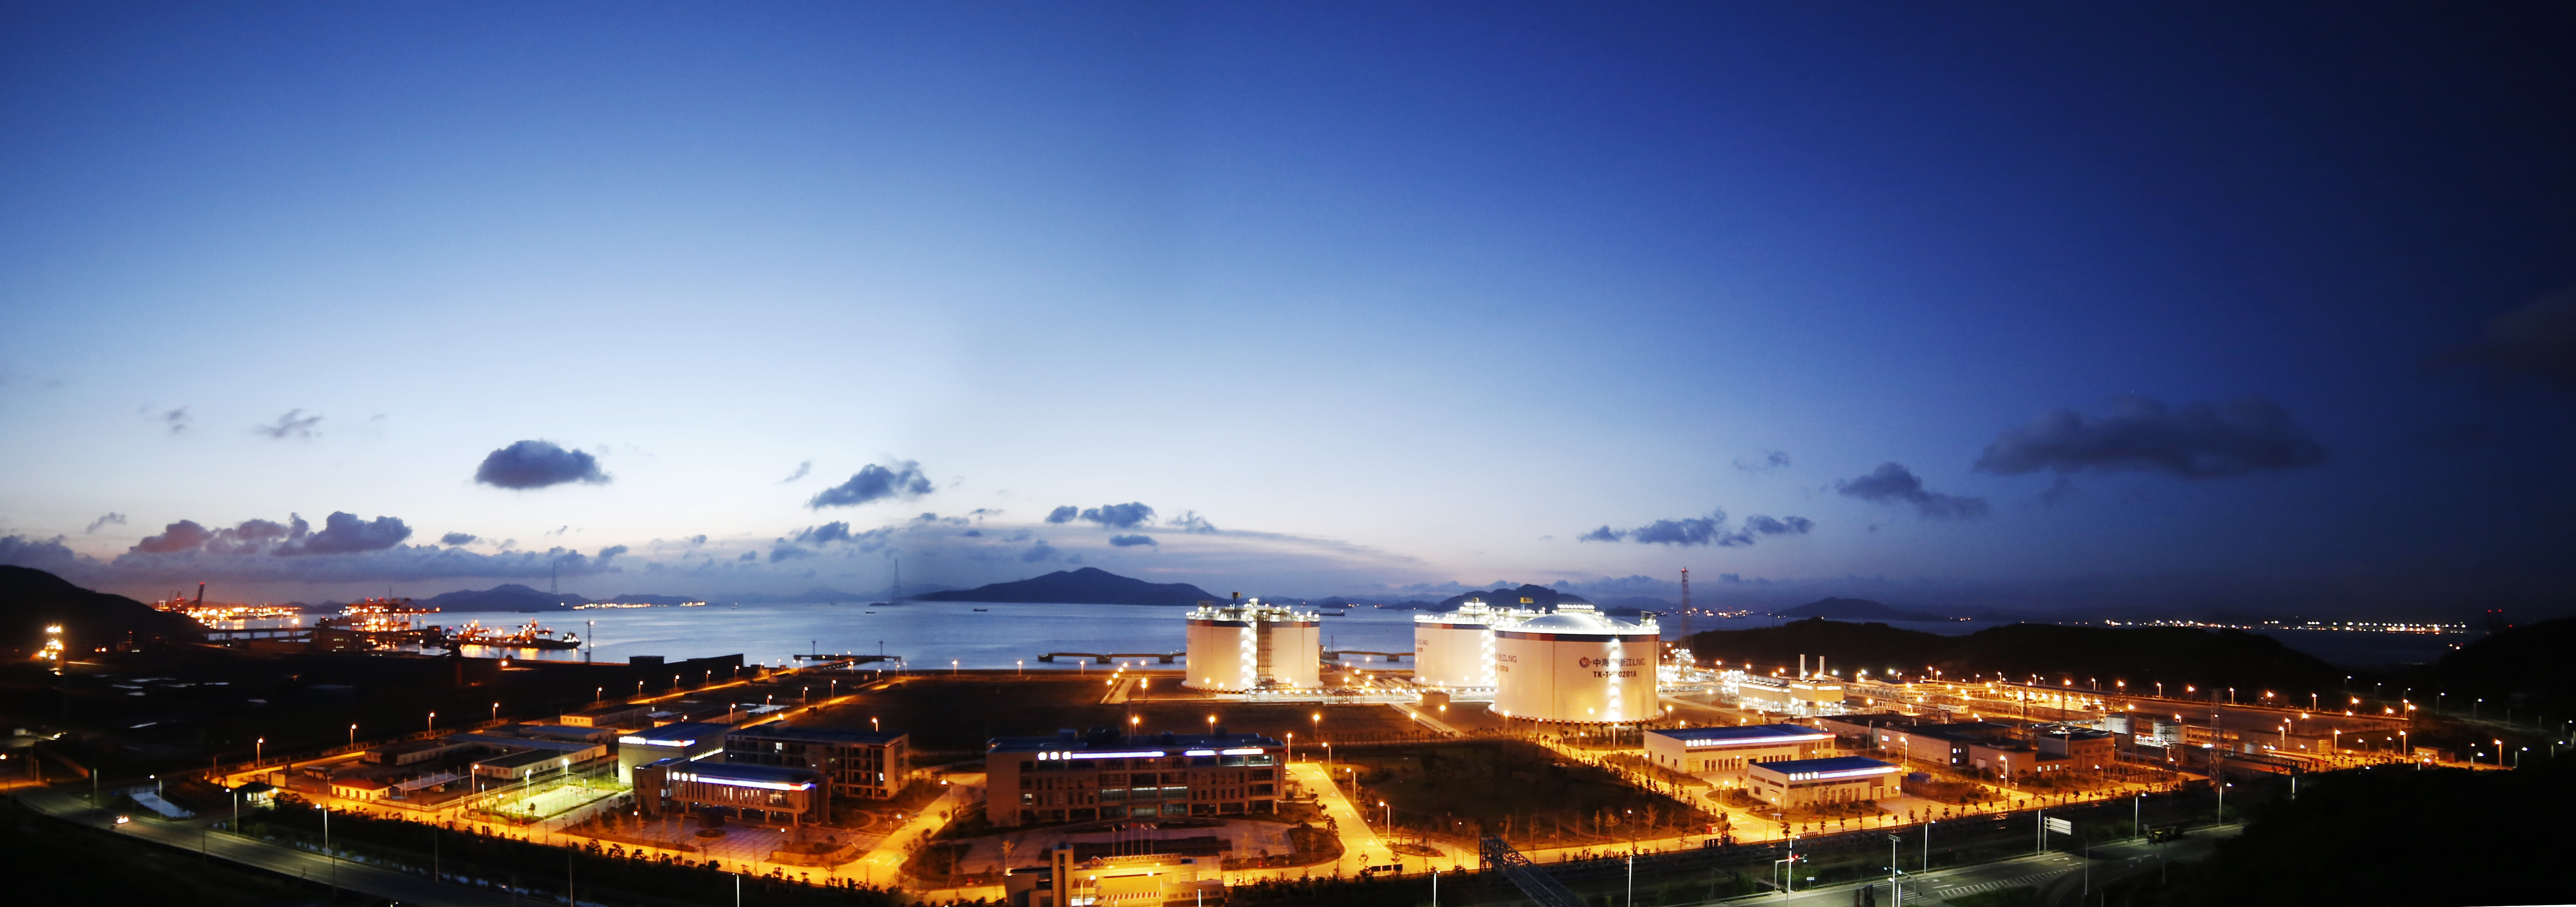 7.2万吨澳大利亚液化天然气成功接卸浙江LNG接收站